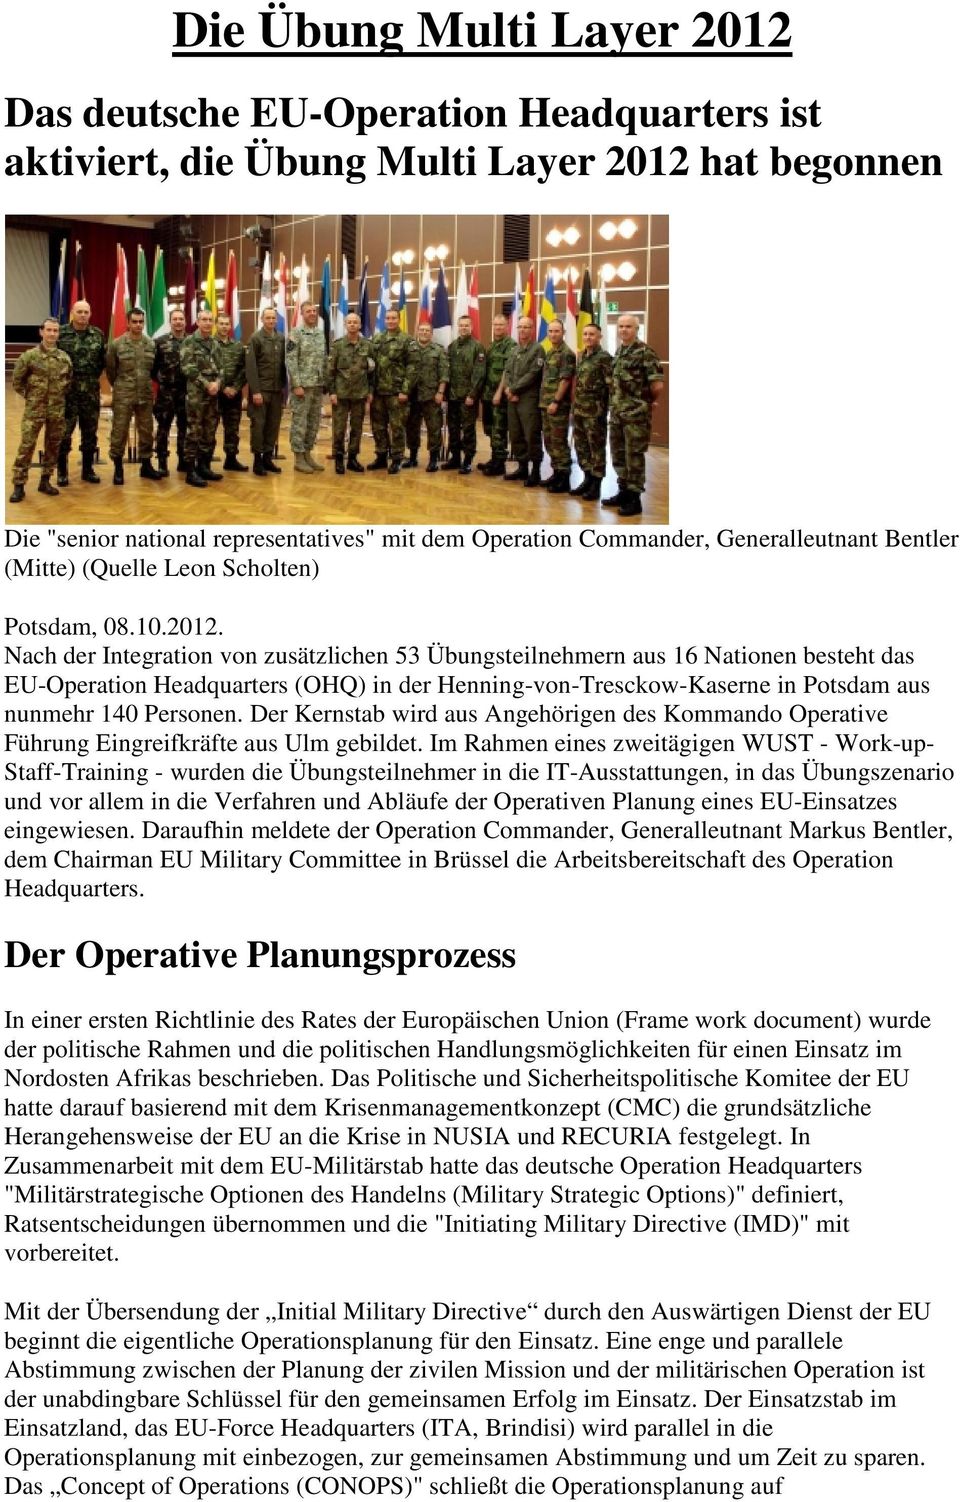 Nach der Integration von zusätzlichen 53 Übungsteilnehmern aus 16 Nationen besteht das EU-Operation Headquarters (OHQ) in der Henning-von-Tresckow-Kaserne in Potsdam aus nunmehr 140 Personen.